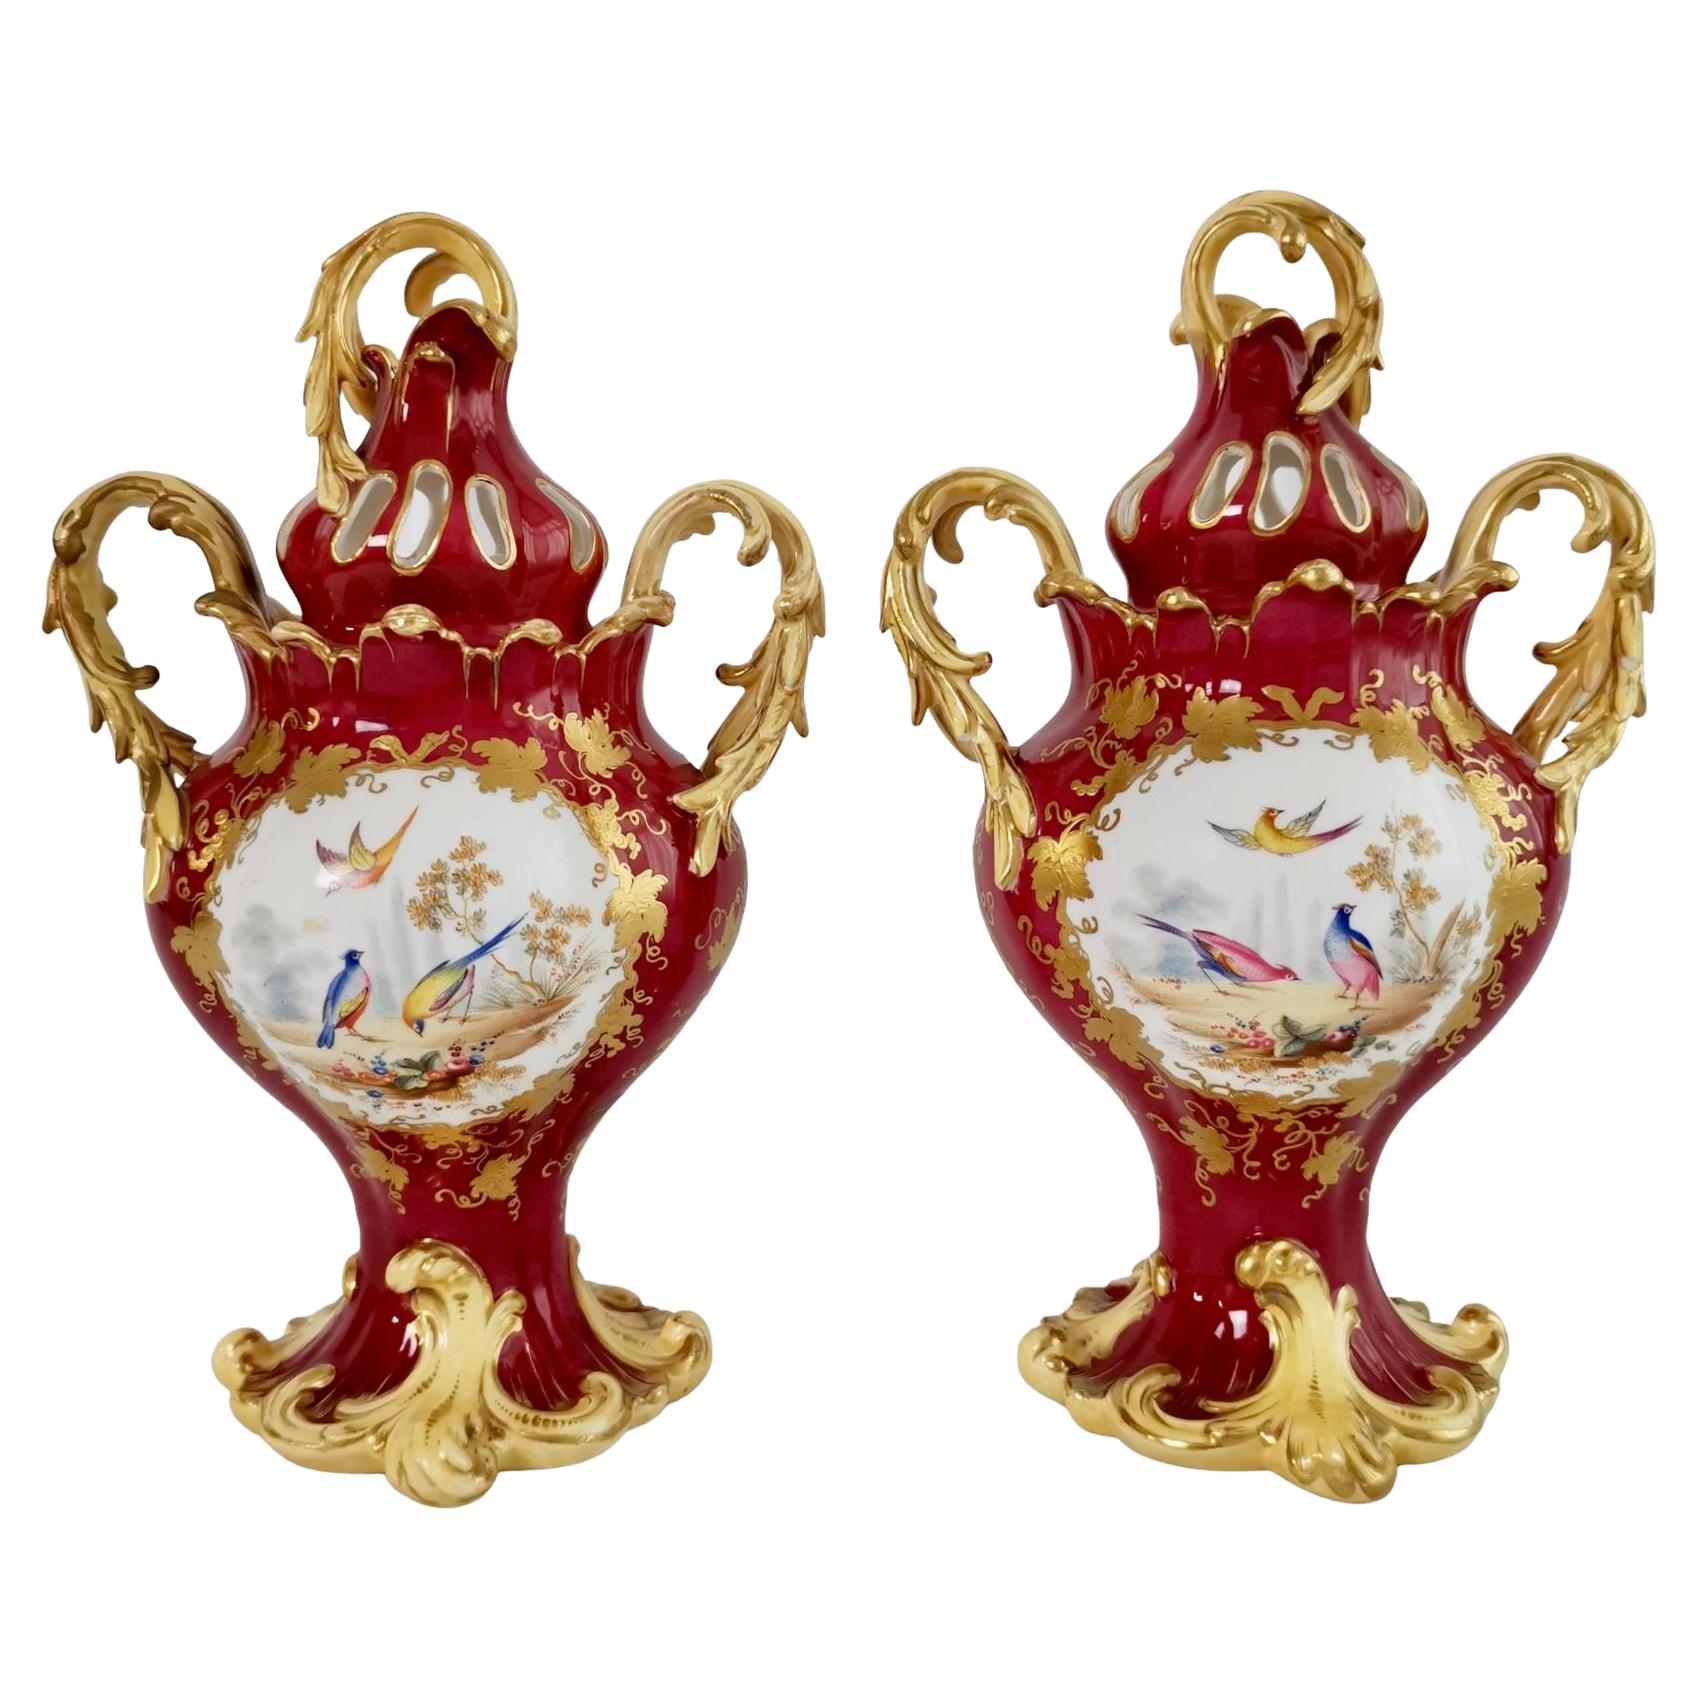 H&R Daniel Pair of Potpourri Vases, Maroon, Birds, Flowers, Rococo Revival c1840